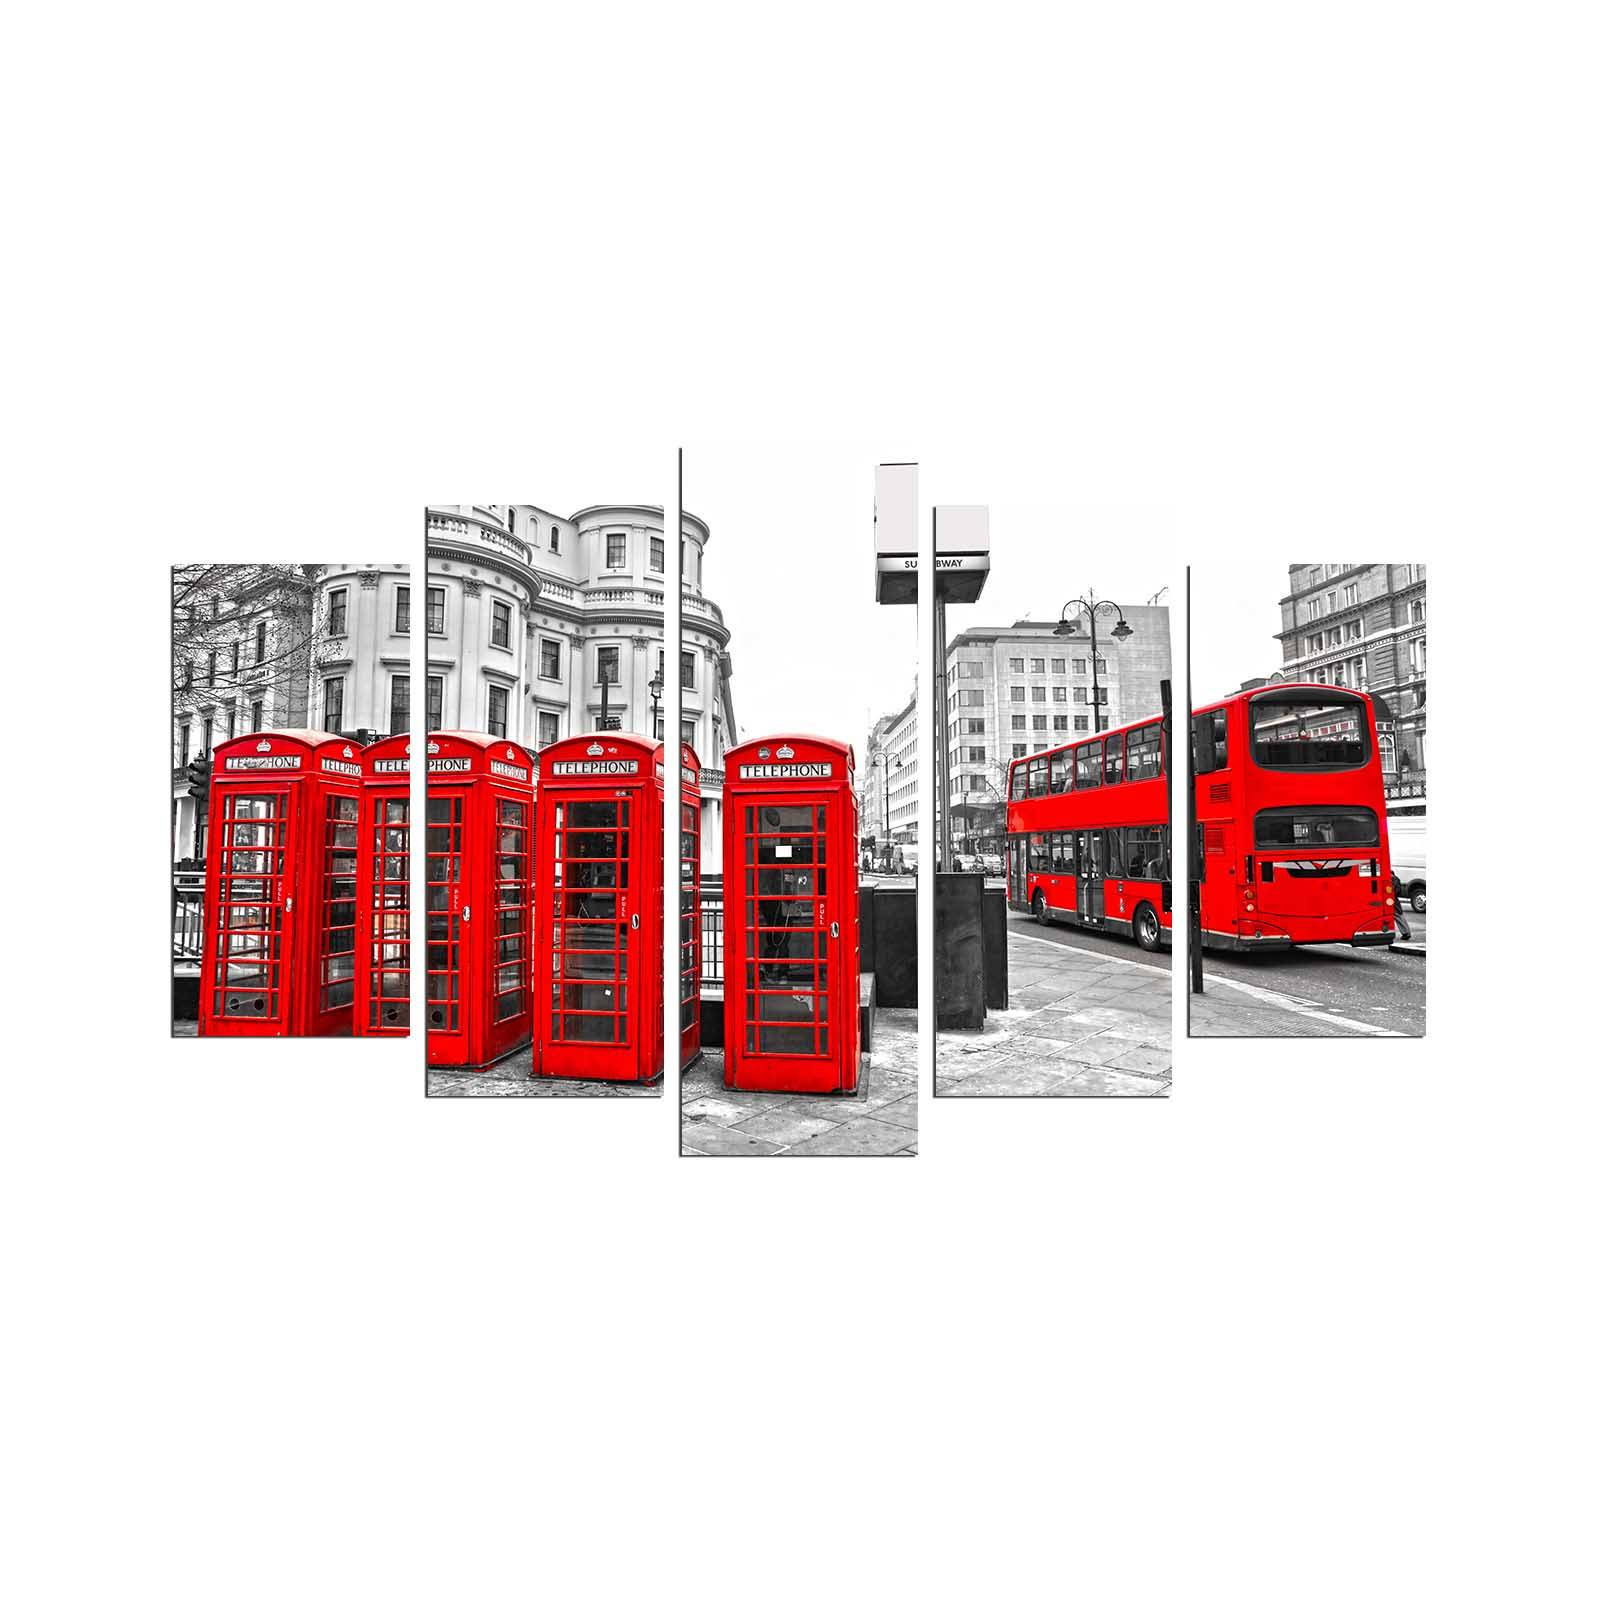 Vijfluik Grex L110xH60cm telefooncellenpatroon, Londen rood en grijs